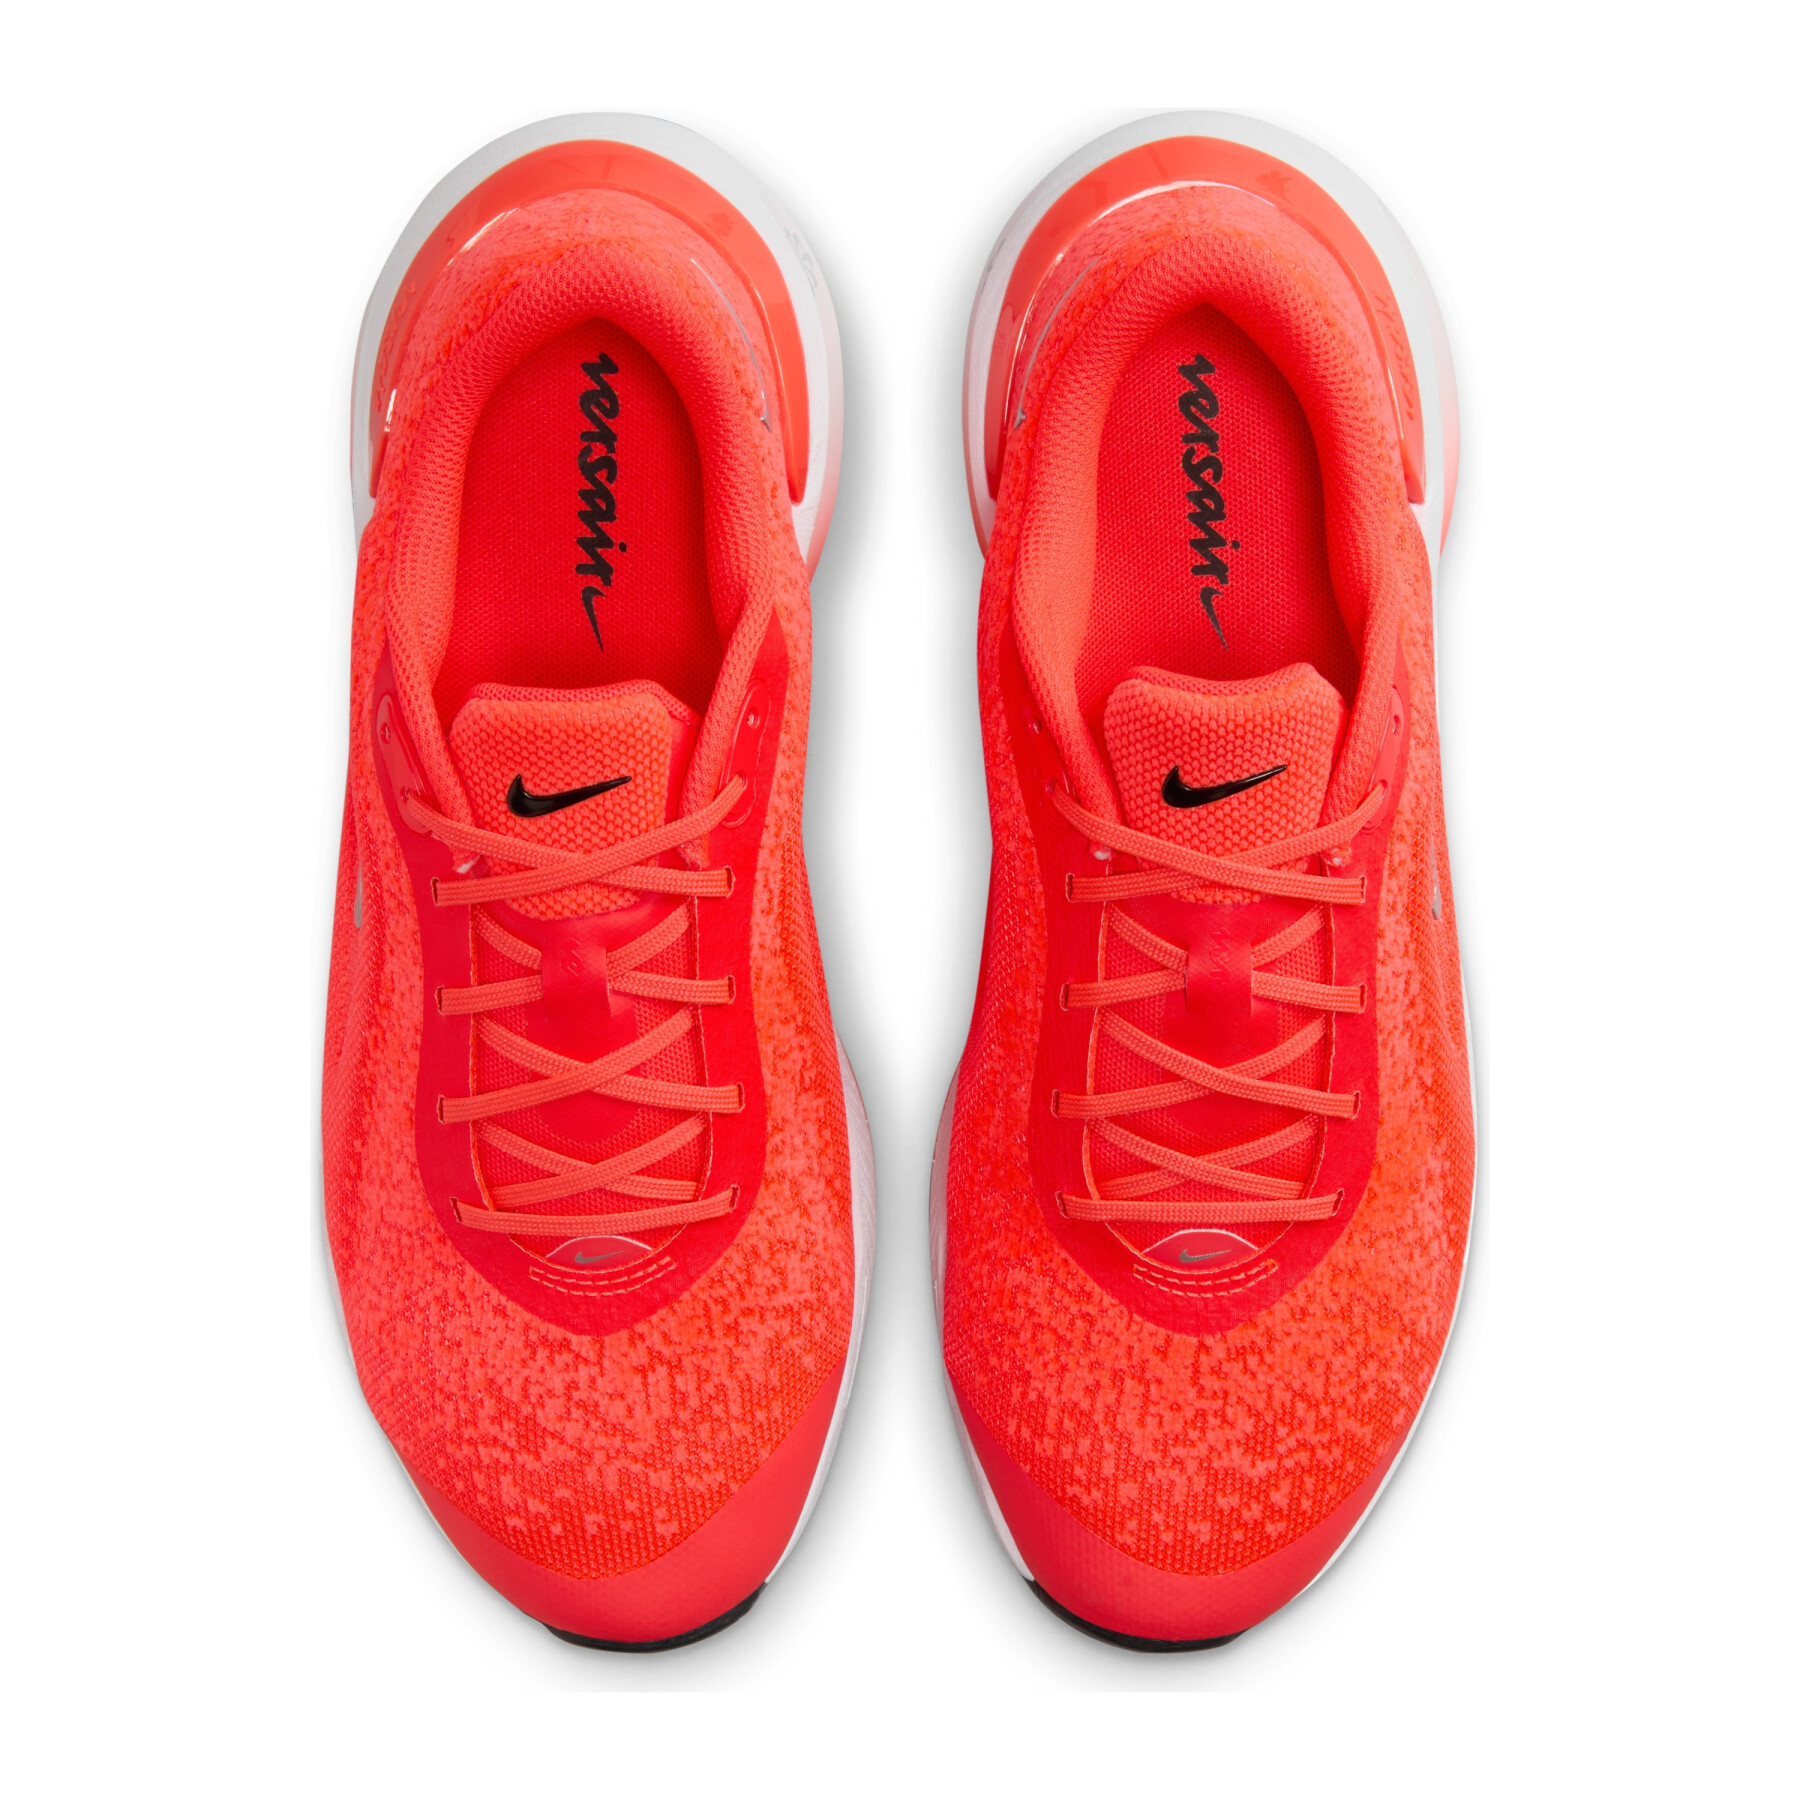 Chaussures de cross training femme Nike Versair